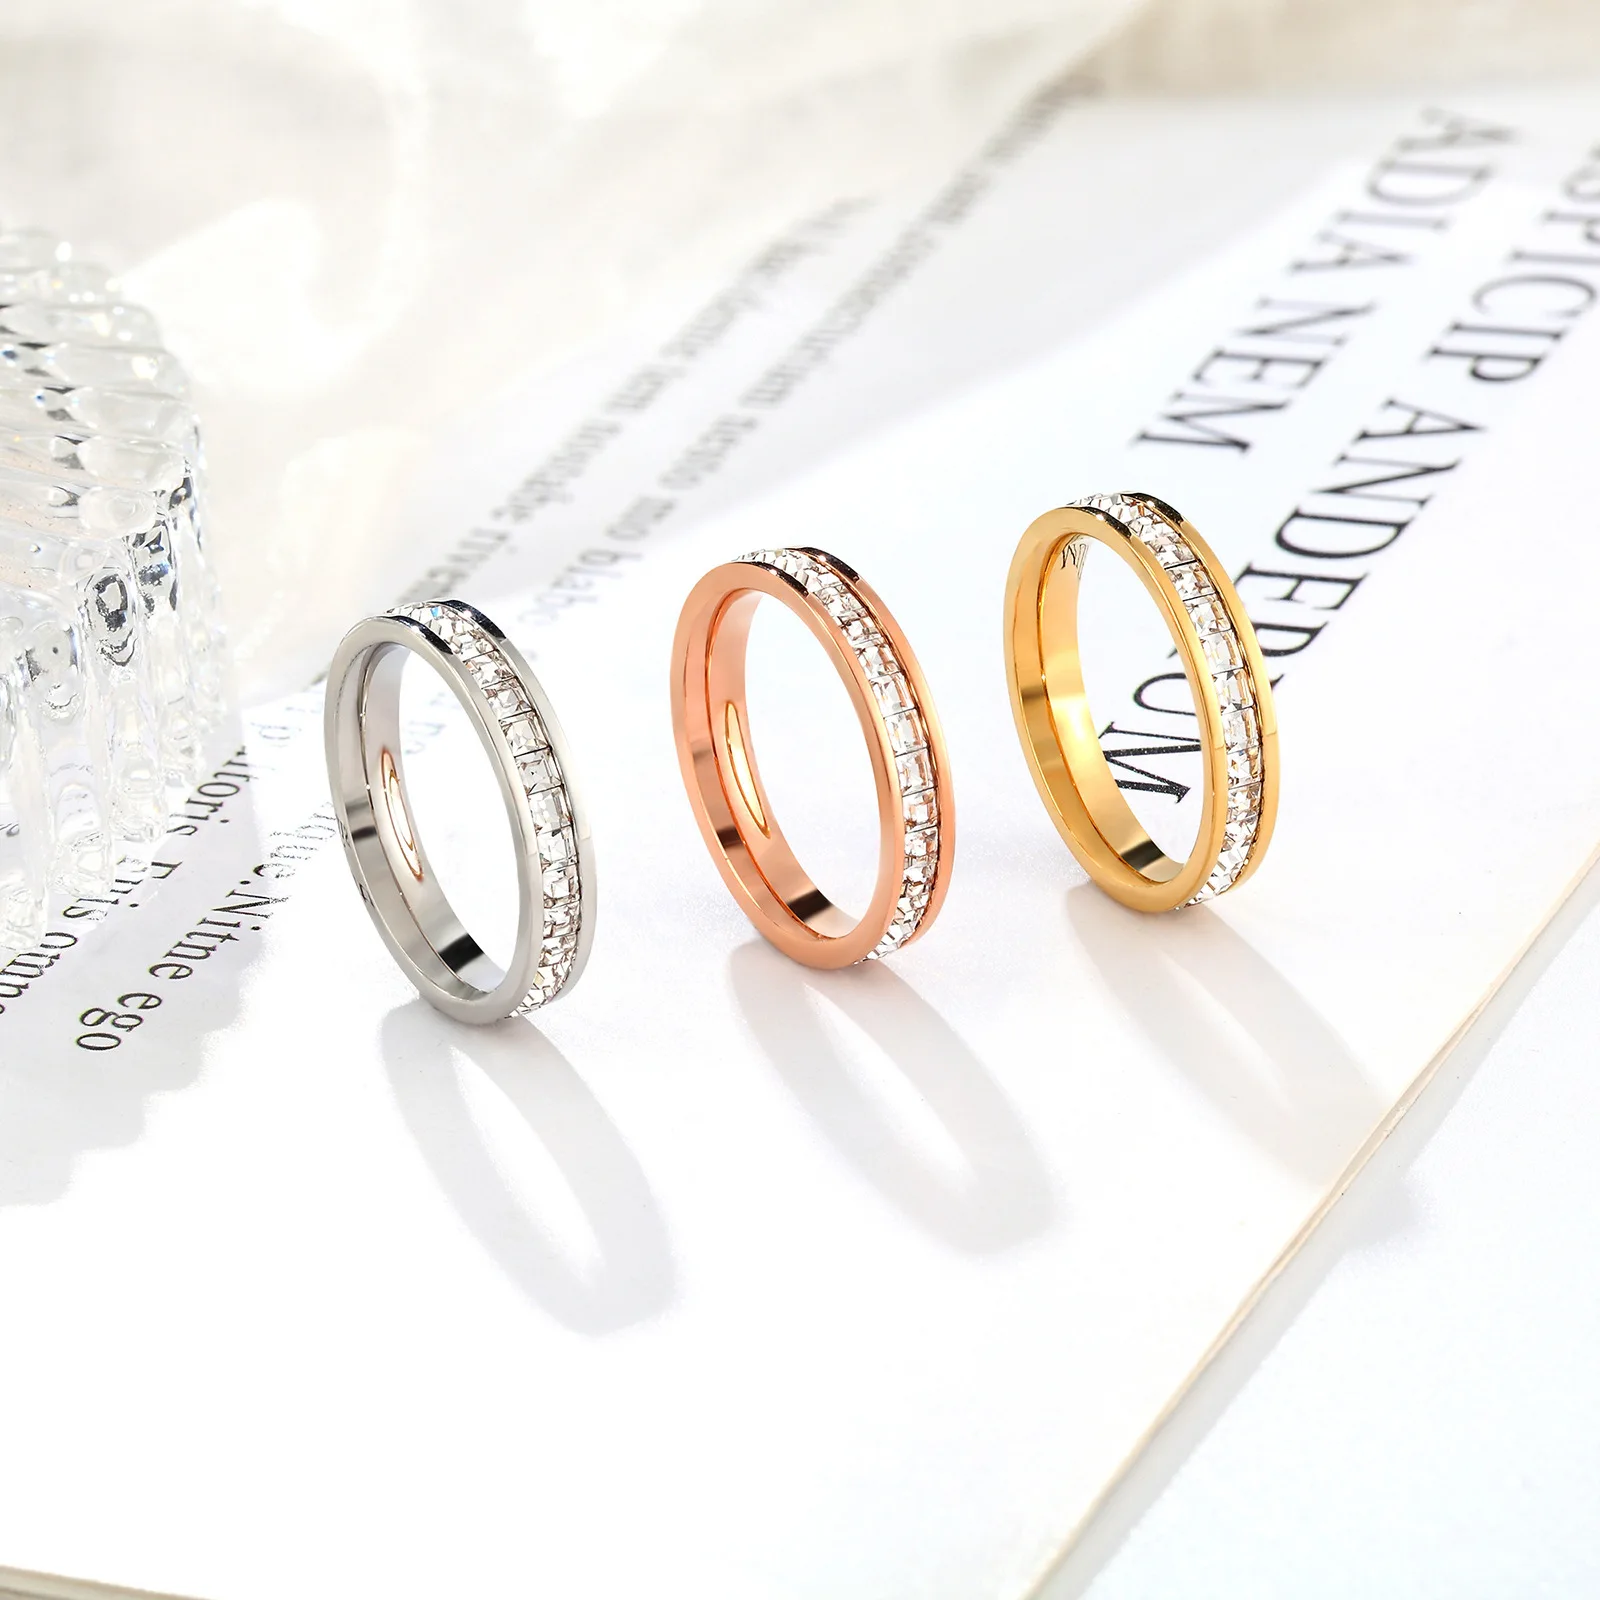 יוקרה קריסטל טיטניום פלדה נשים טבעת לבן ים פגז קריסטל טבעת של הזוג טבעת האהבה תכשיט מתנה - 1